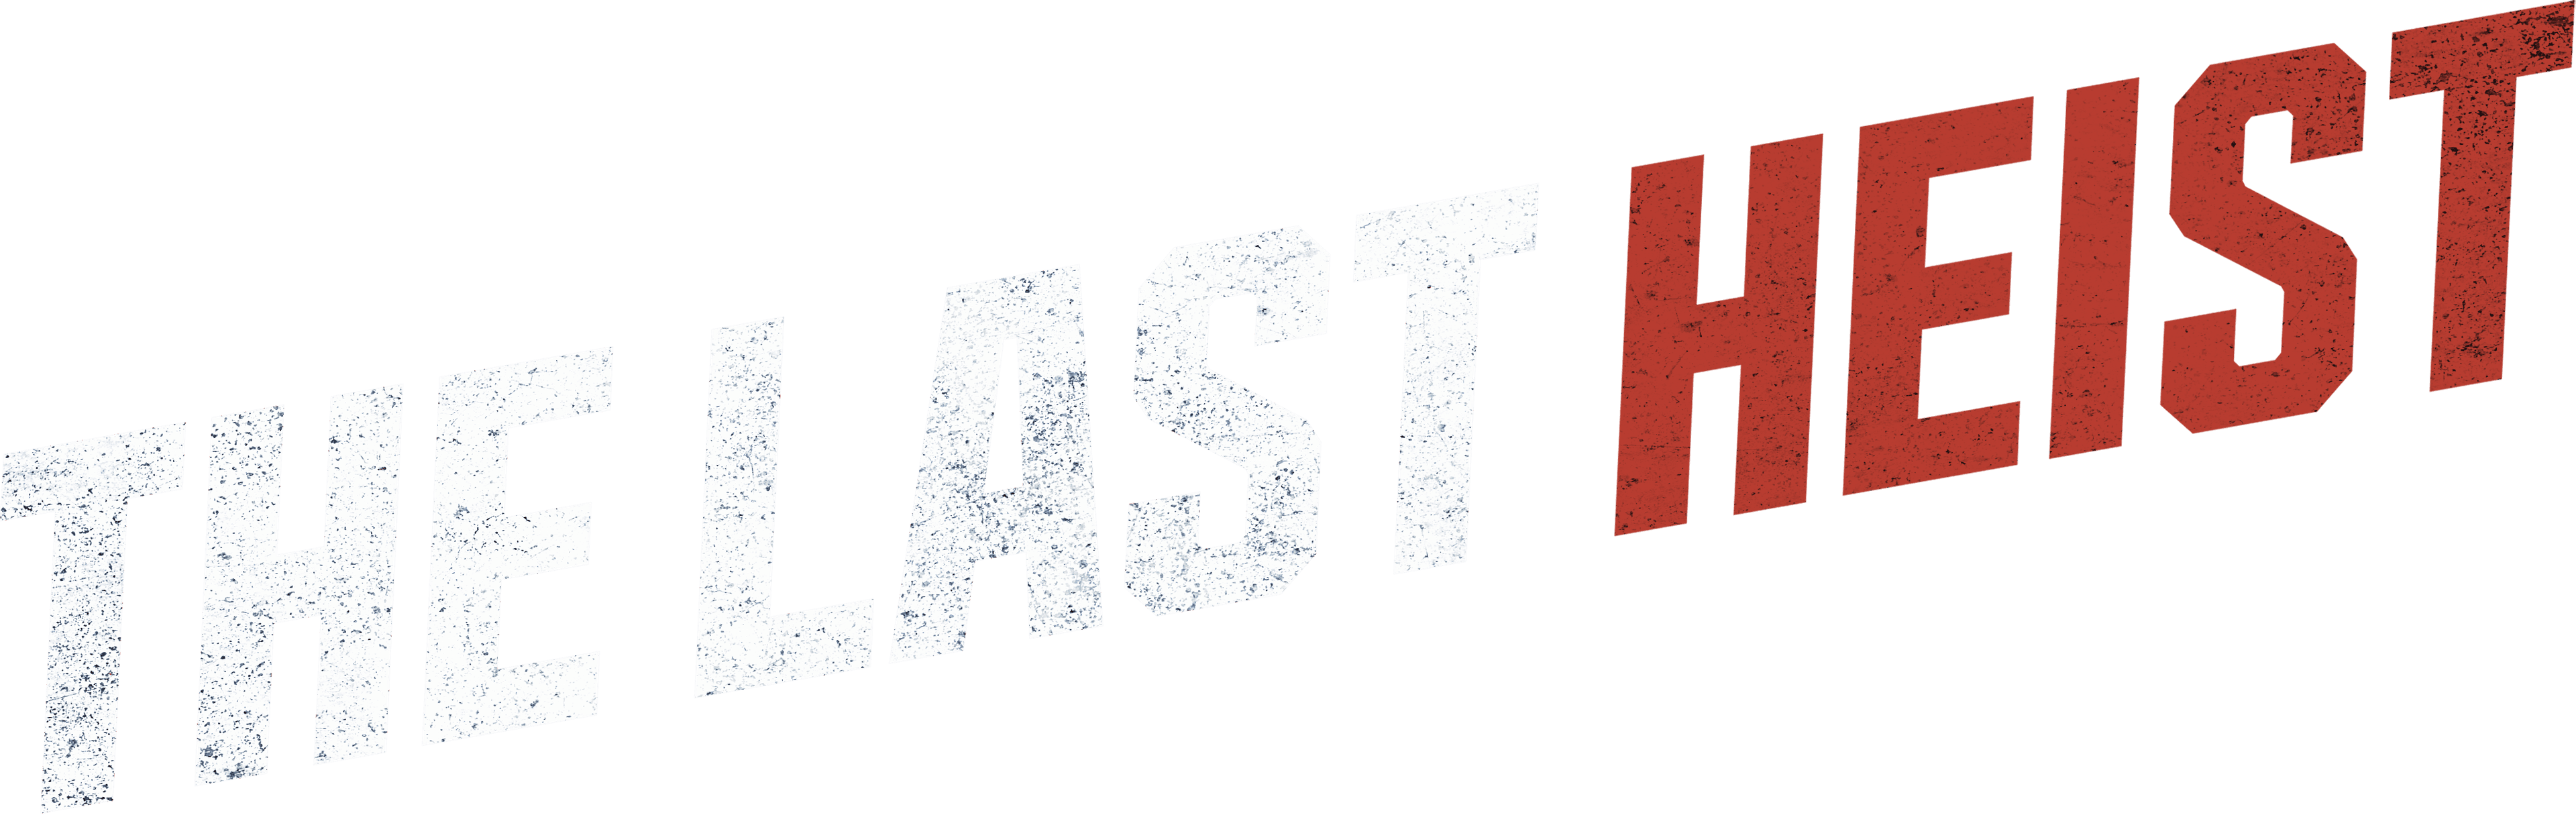 The Last Heist logo